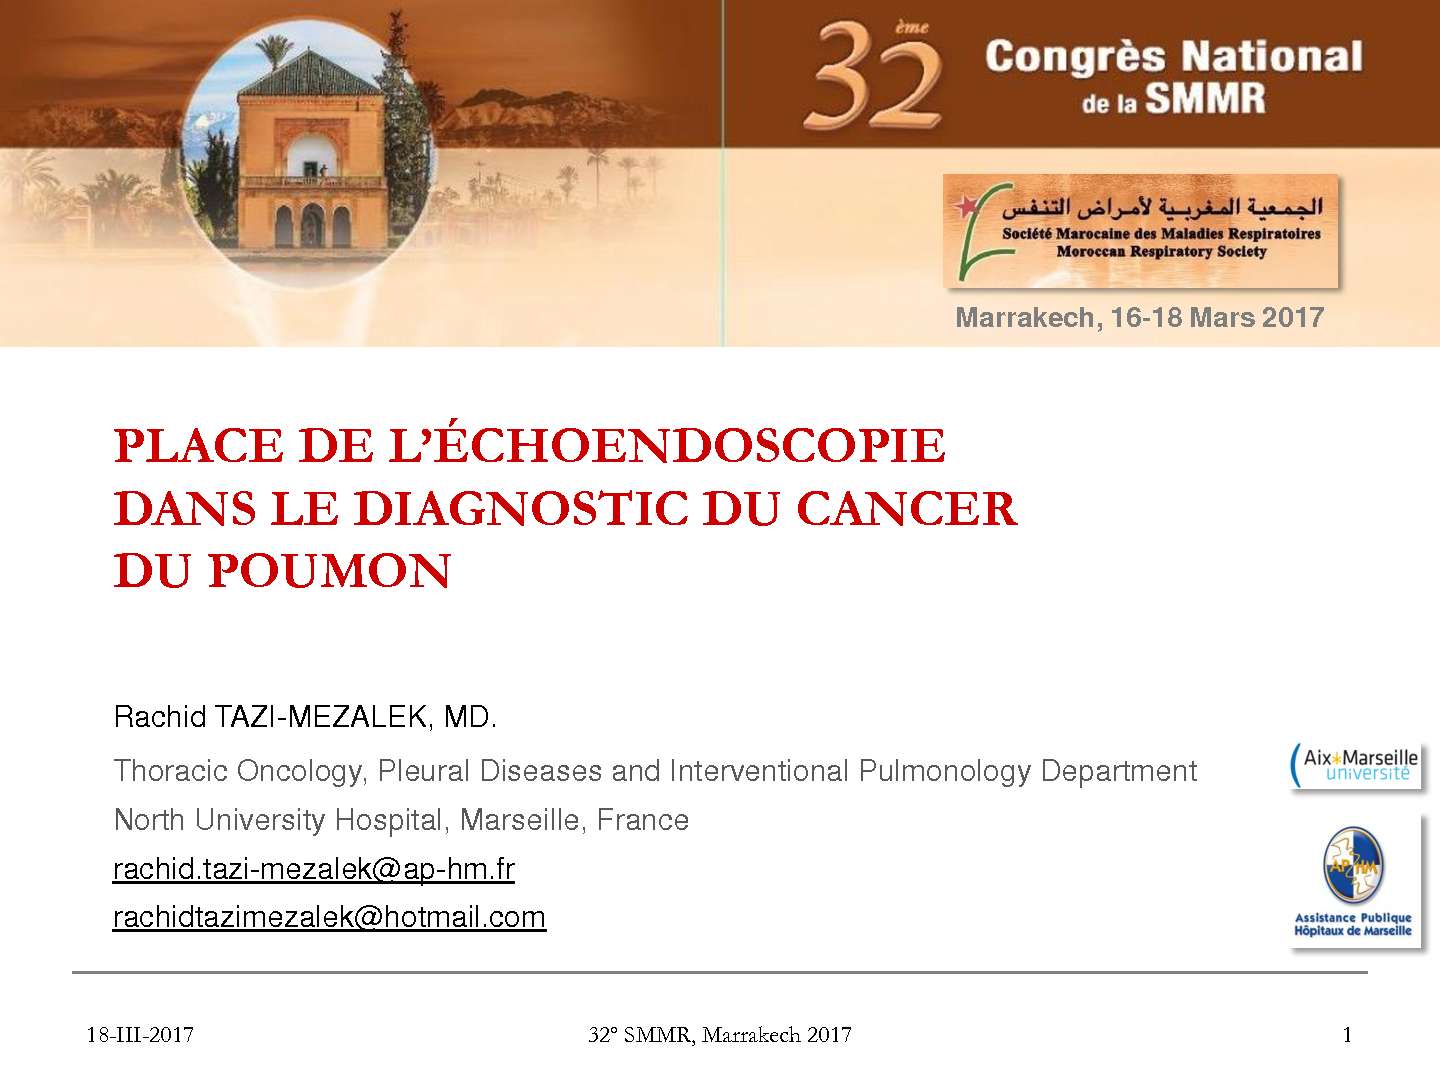 Place de l'echo endoscopie dans le diagnostic du cancer du poumon. R. TAZI MEZAlEK (Marseille)